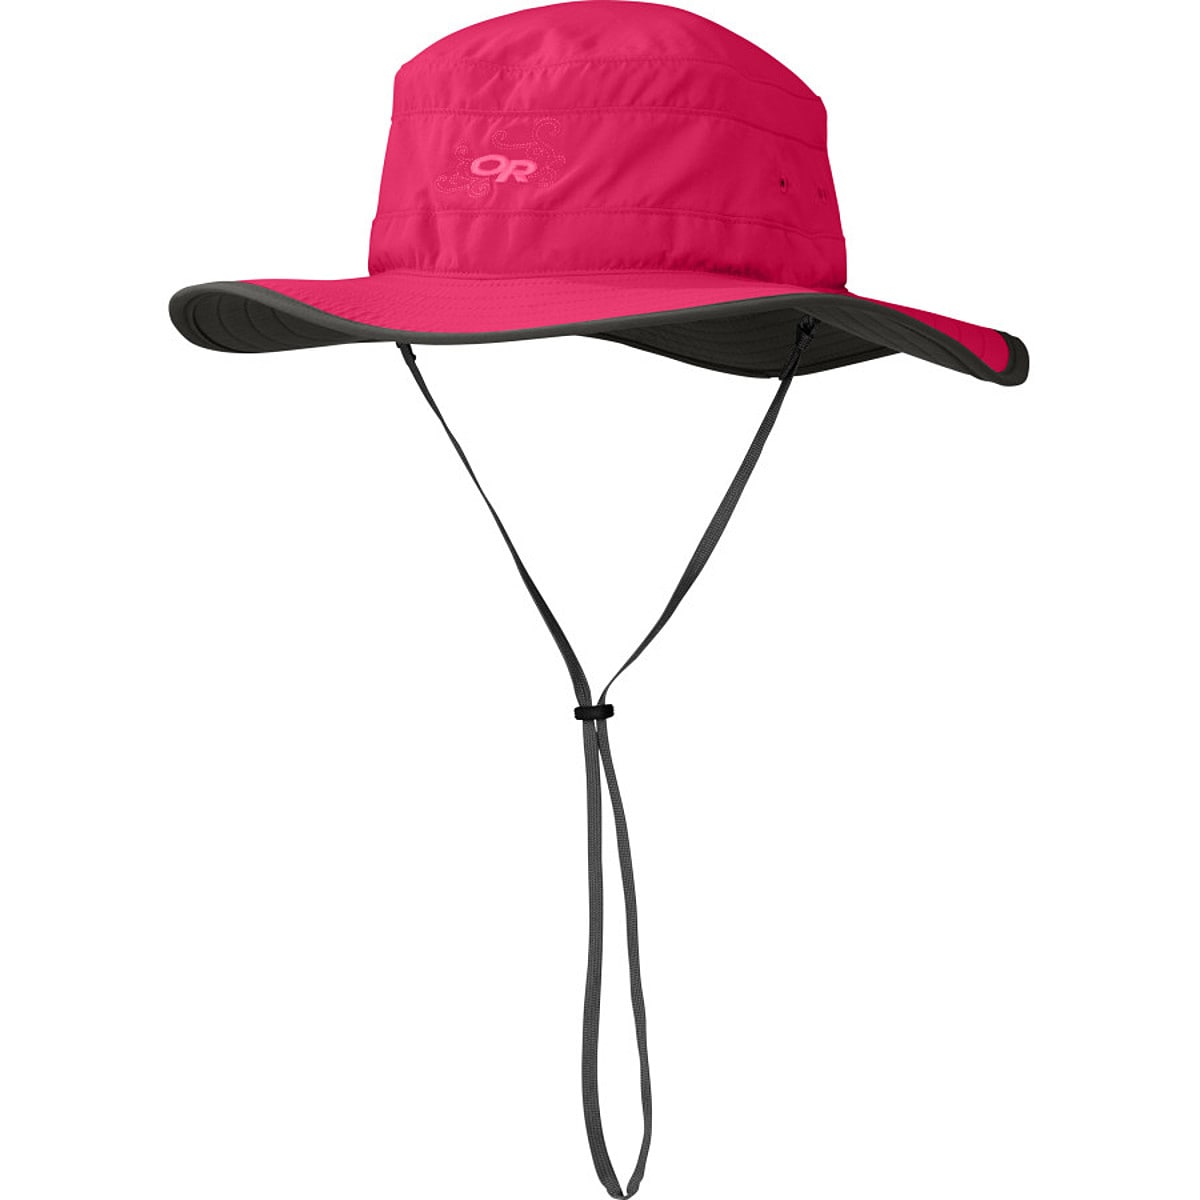 Solar Roller Sun Hat - Women